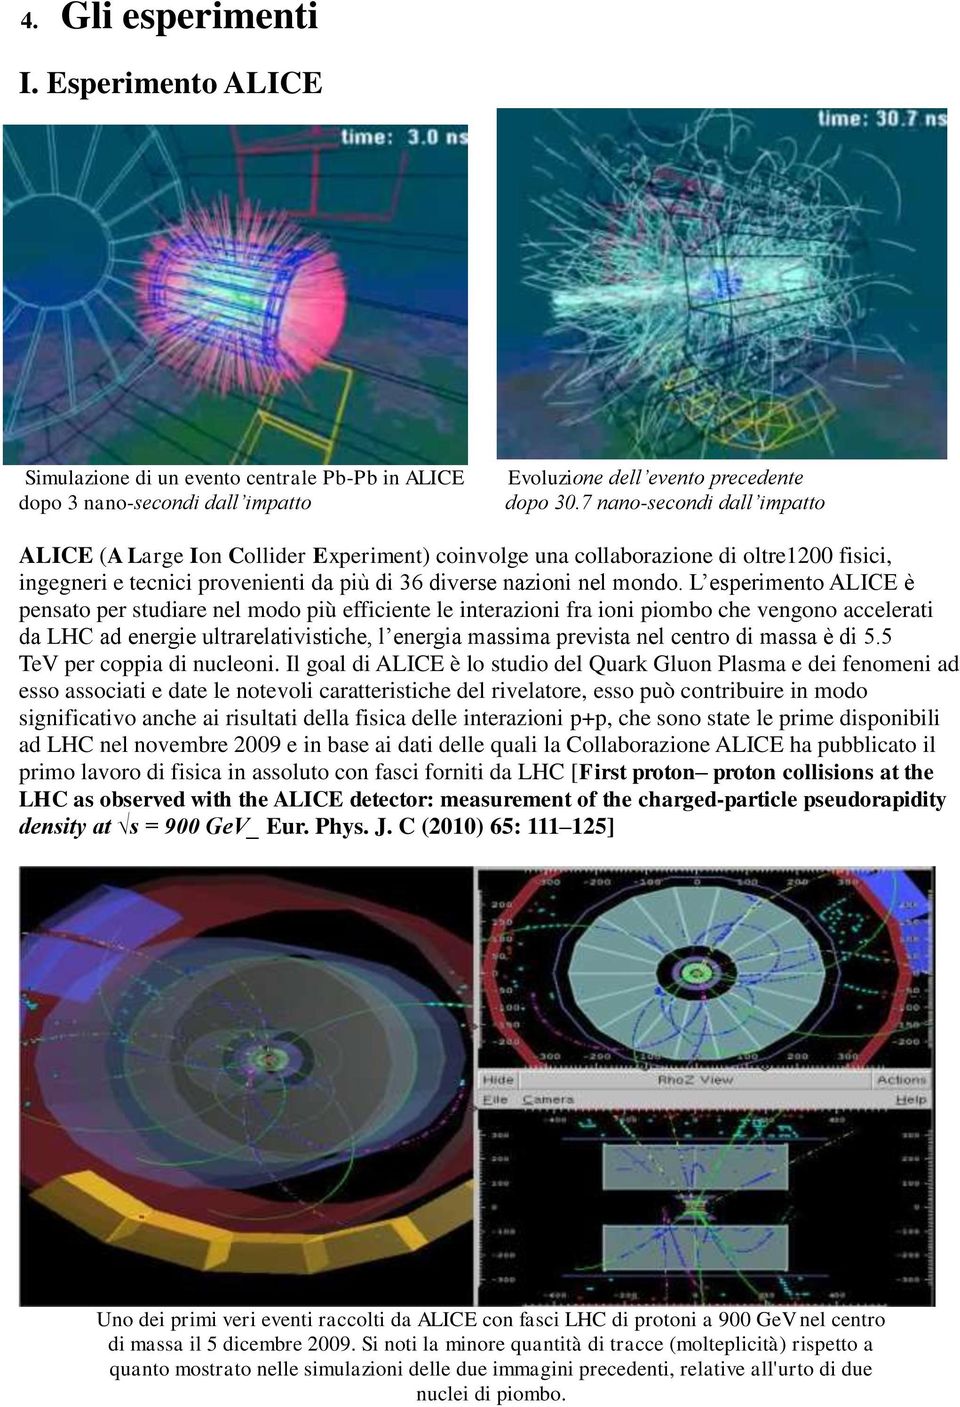 L esperimento ALICE è pensato per studiare nel modo più efficiente le interazioni fra ioni piombo che vengono accelerati da LHC ad energie ultrarelativistiche, l energia massima prevista nel centro